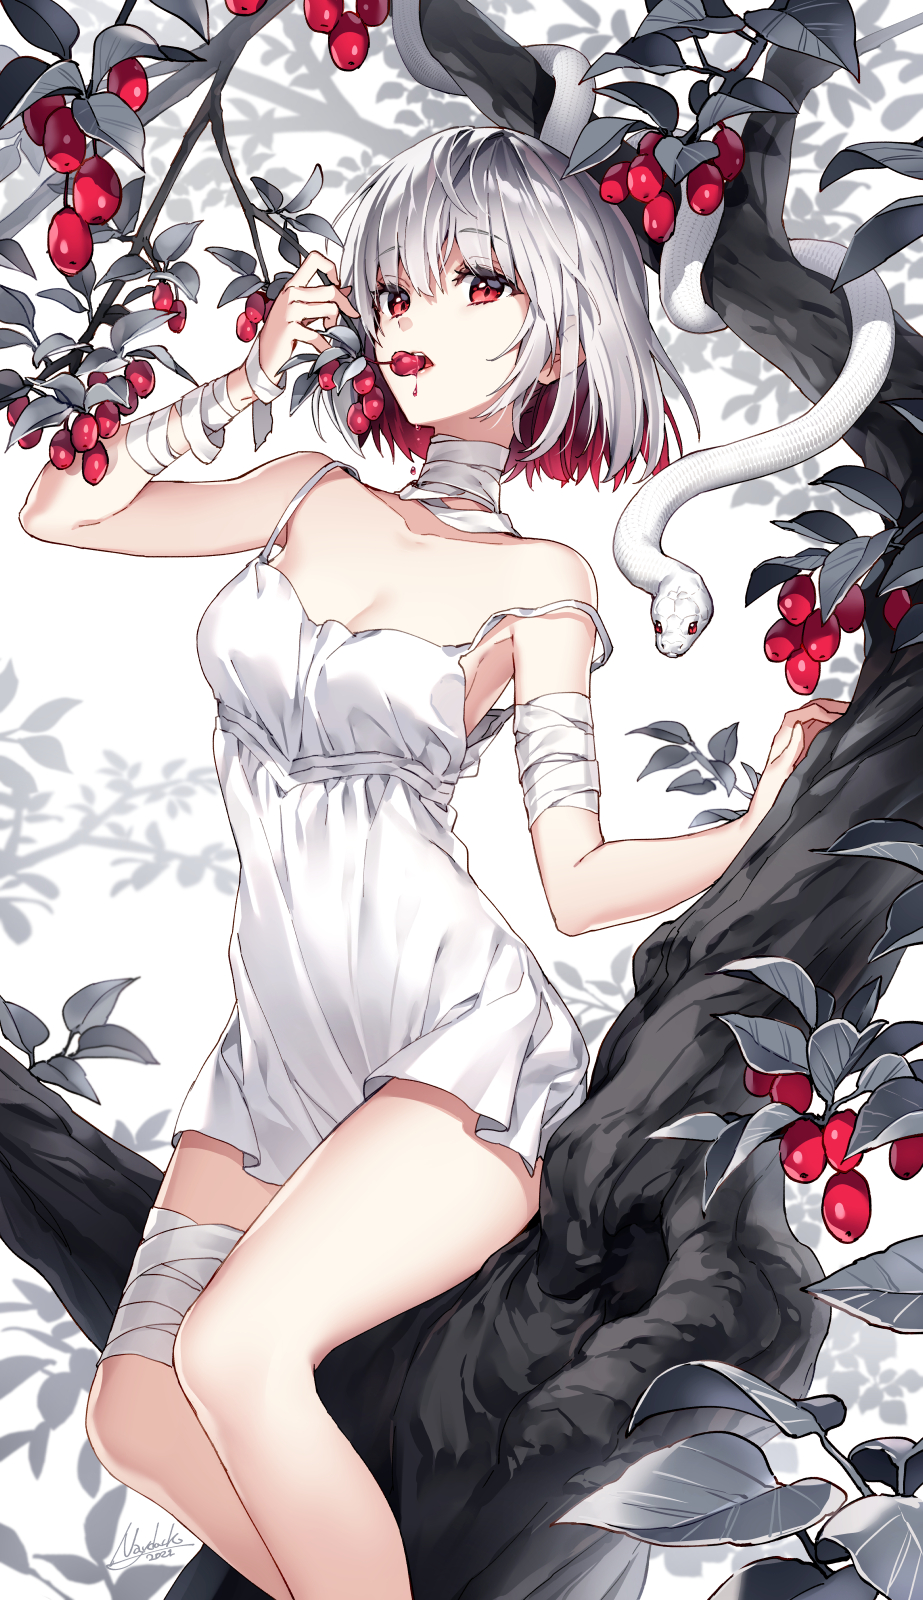 Anime Anime Girls Digital Art Artwork 2D Portrait Display Vertical Nardack Trees Berries Snake Short 923x1600